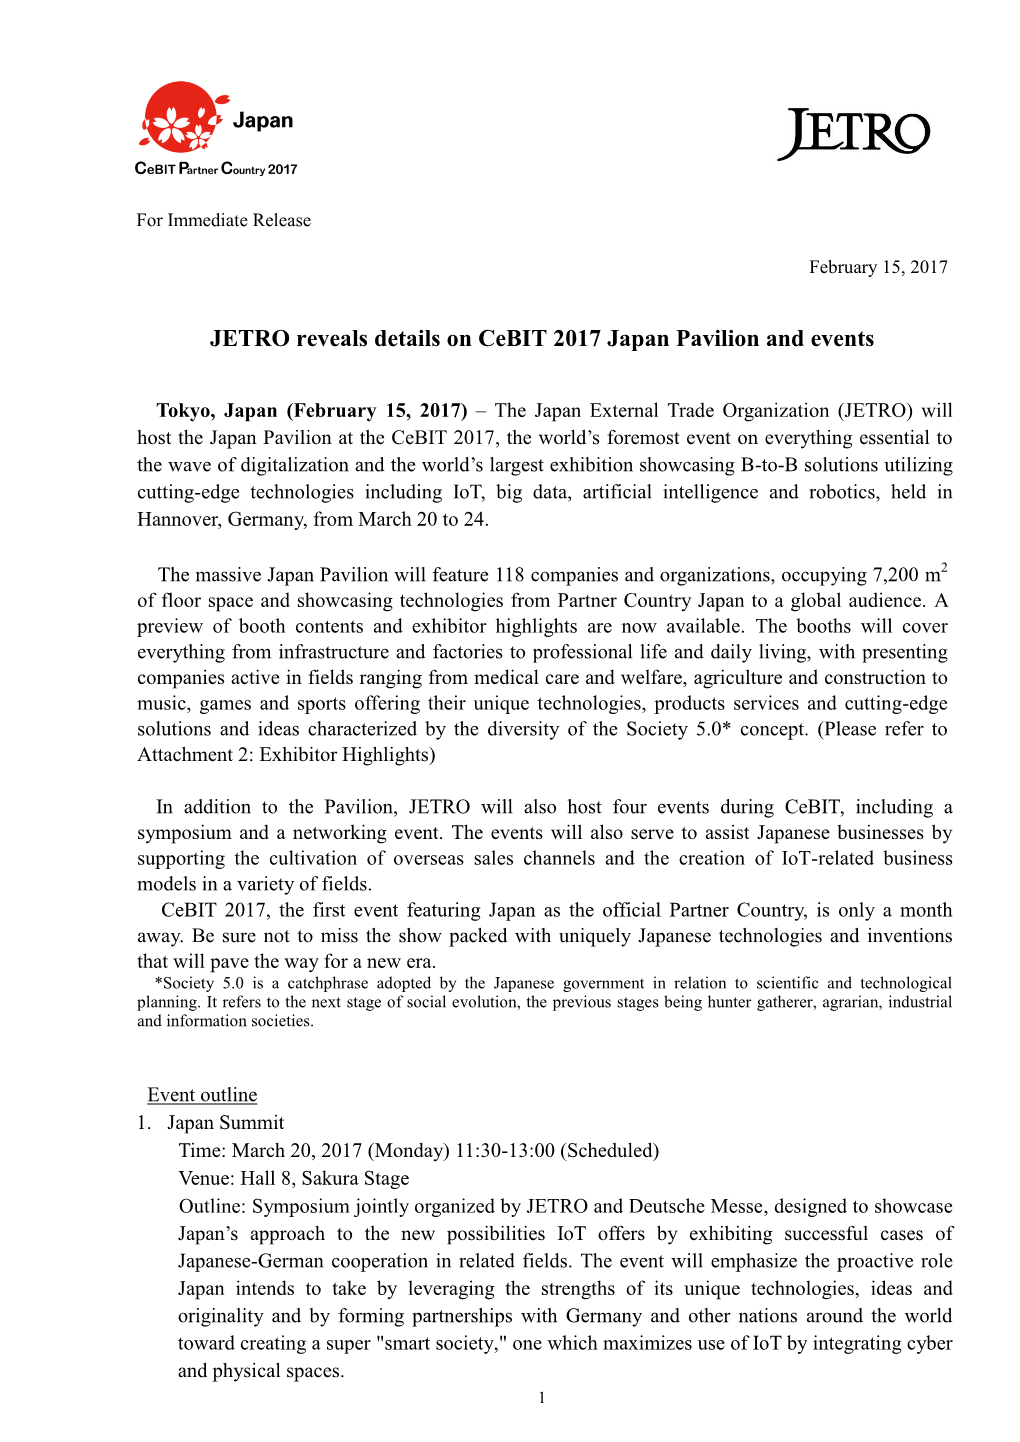 JETRO Reveals Details on Cebit 2017 Japan Pavilion and Events